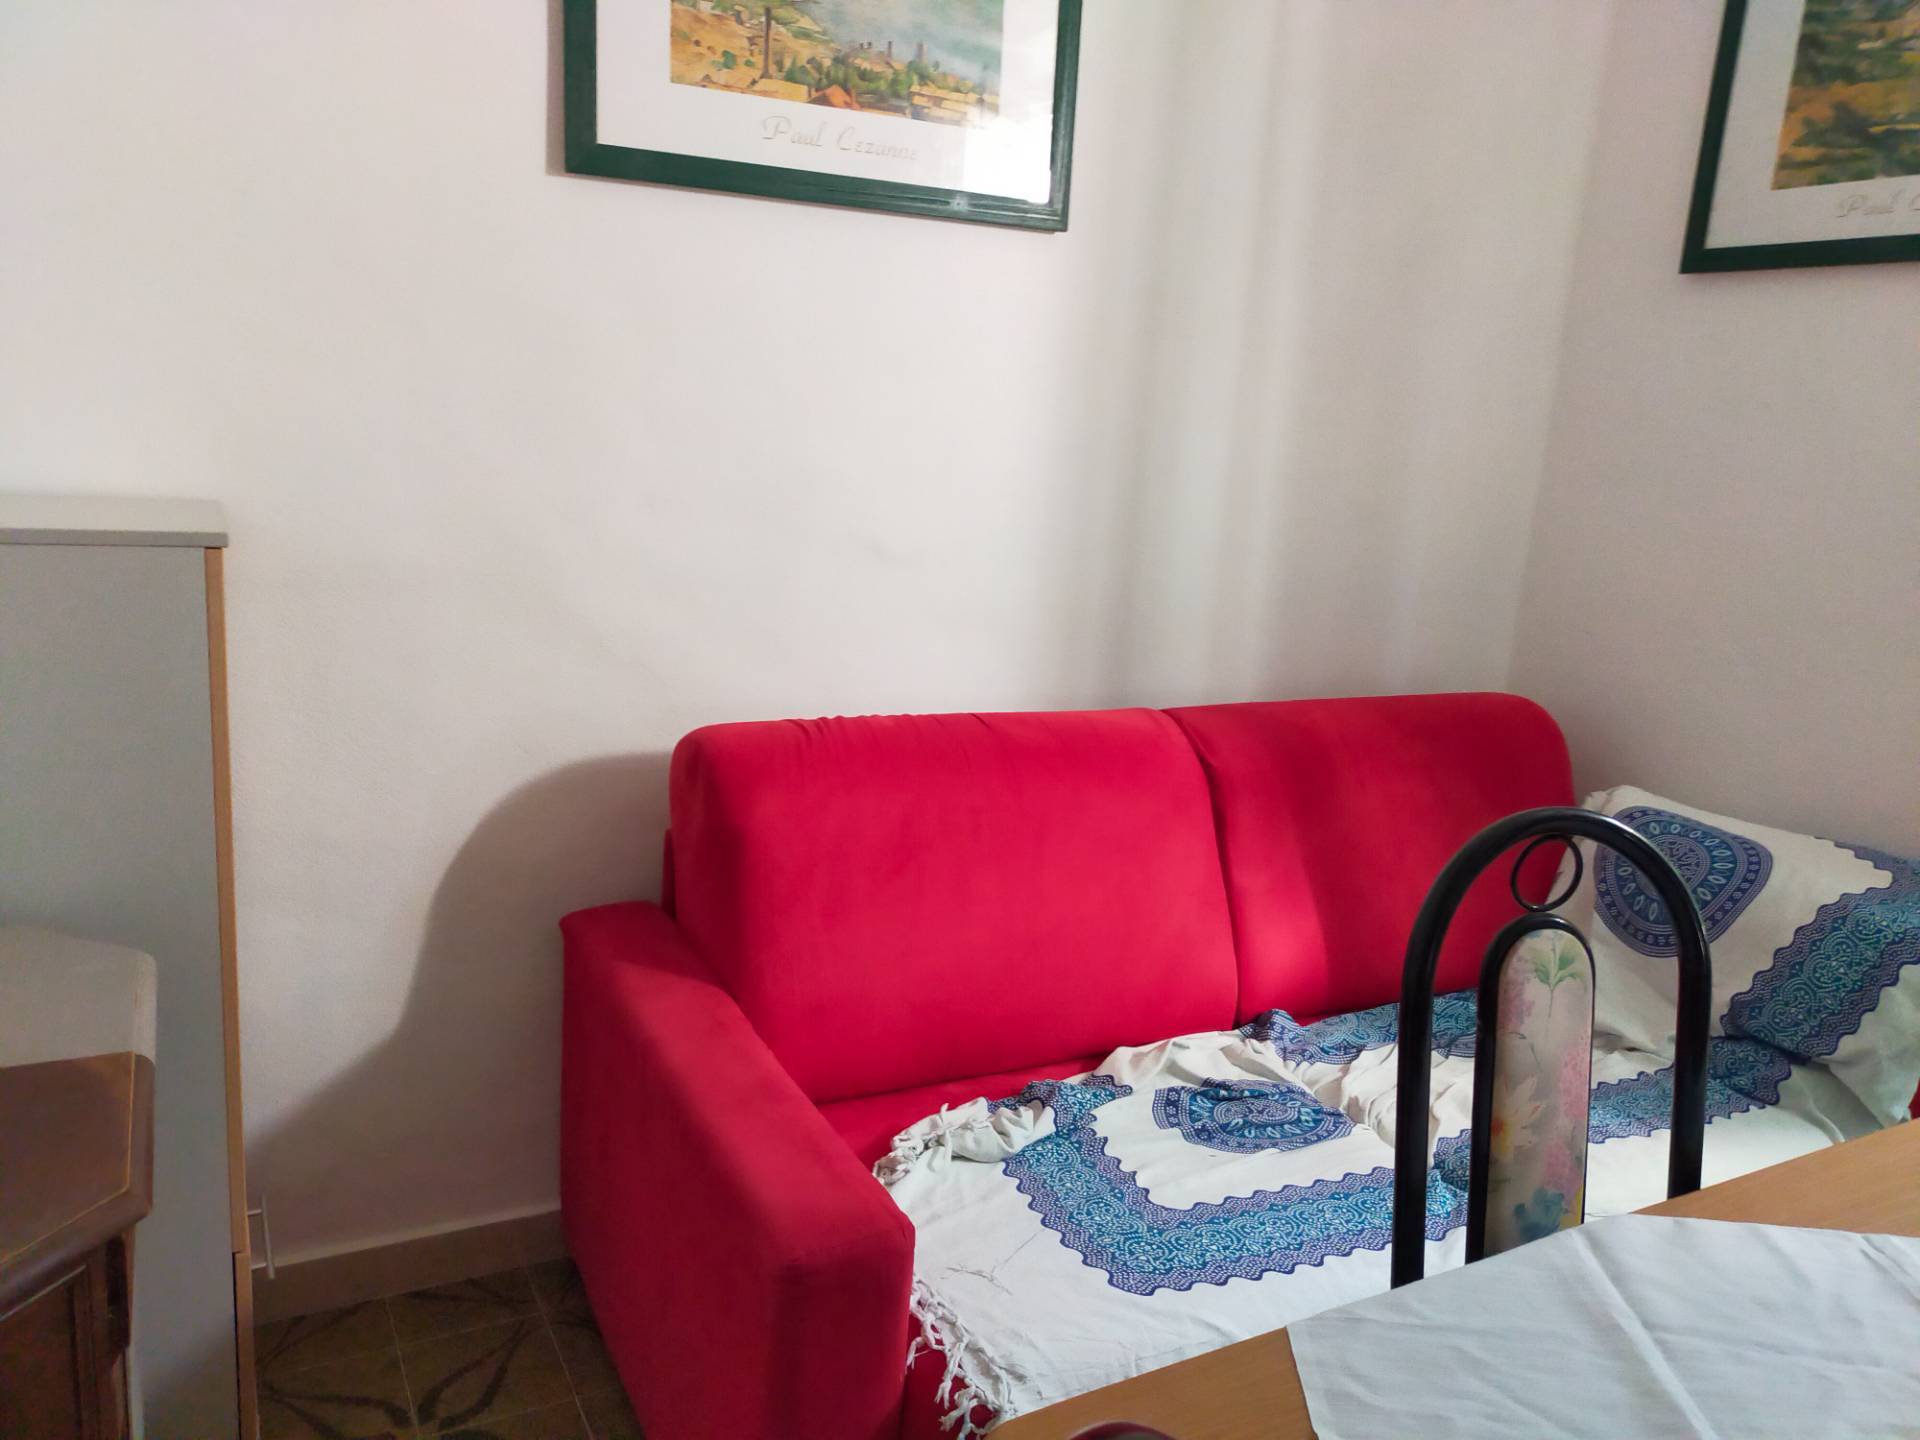 Appartamento in affitto a Savignano sul Rubicone, 2 locali, zona Località: Cesare, prezzo € 800 | CambioCasa.it